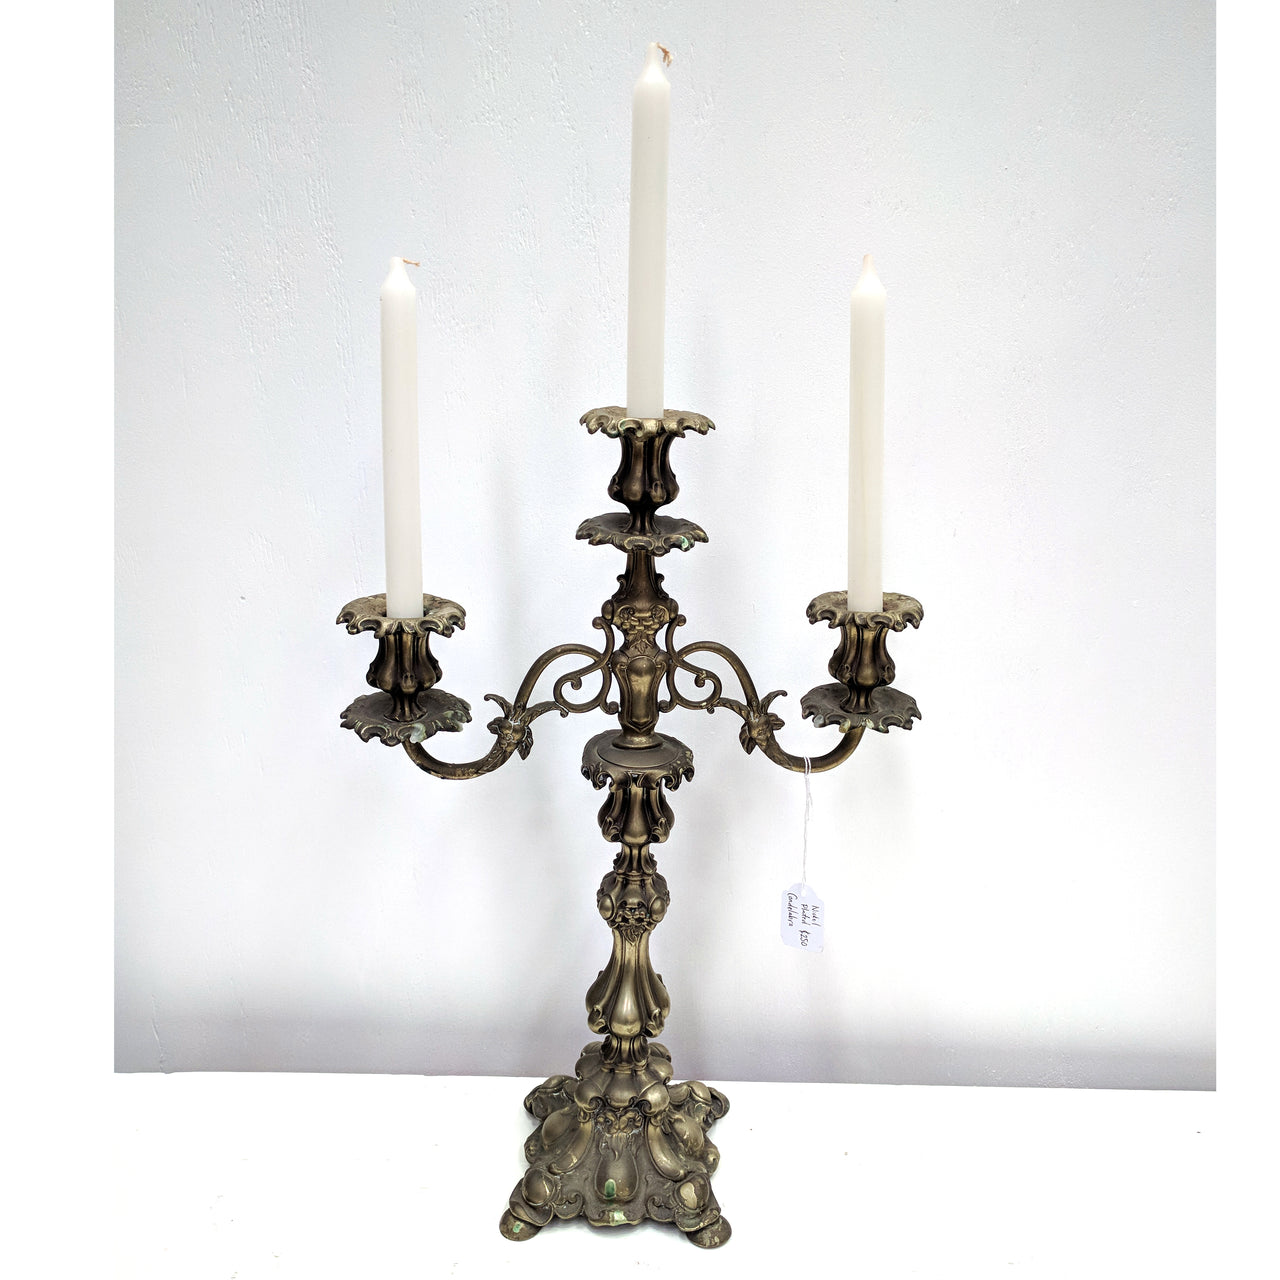 Antique style brass candelabra